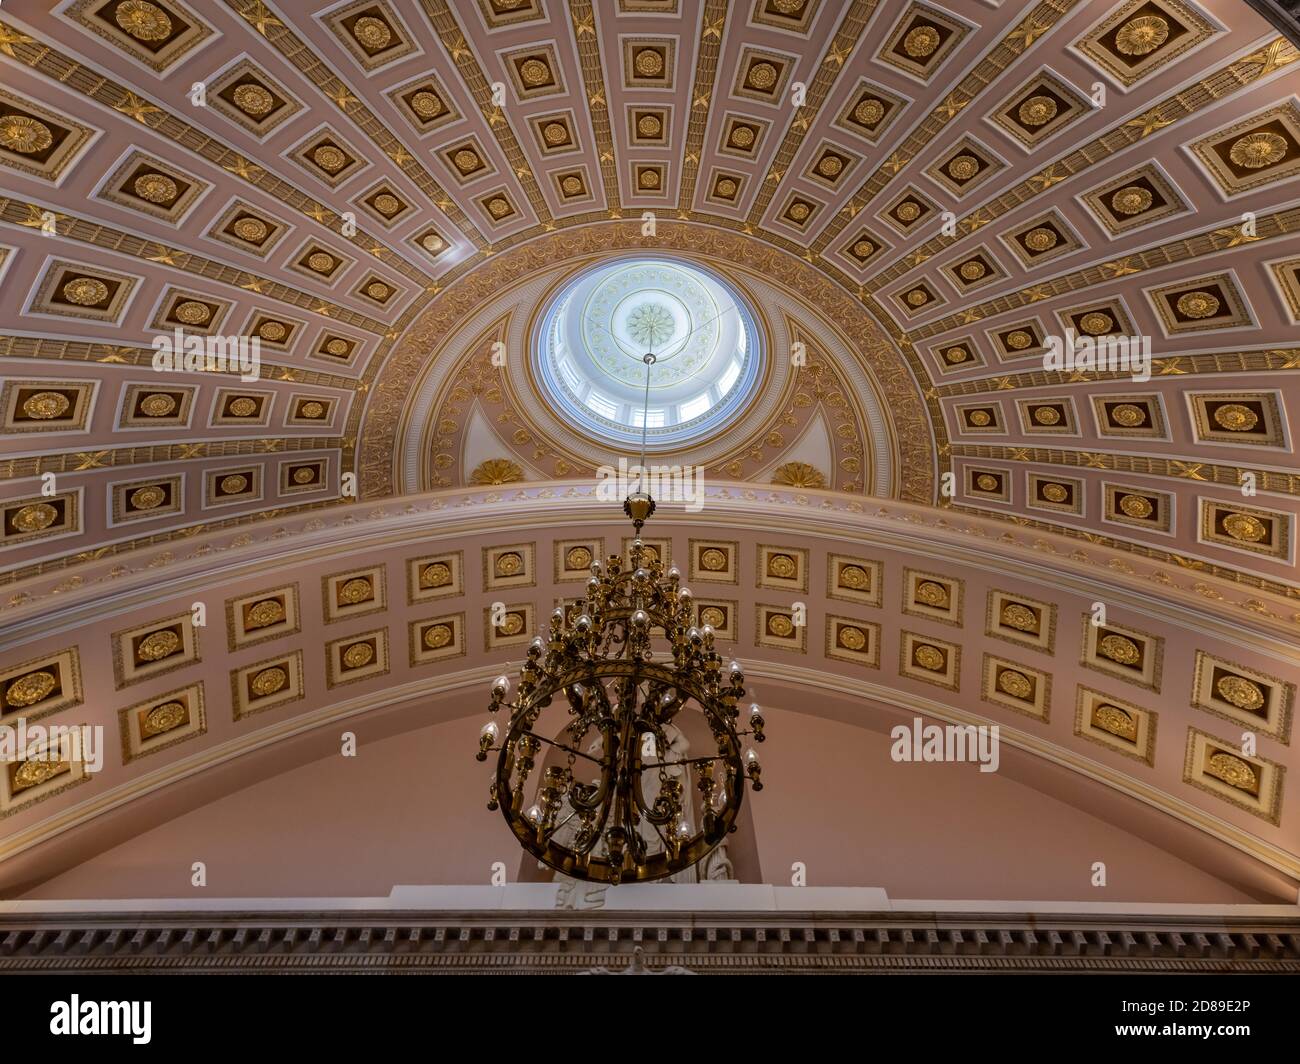 La linterna y el techo muy ornamentado del Nacional Statuary Hall en el edificio del Capitolio de los Estados Unidos Foto de stock